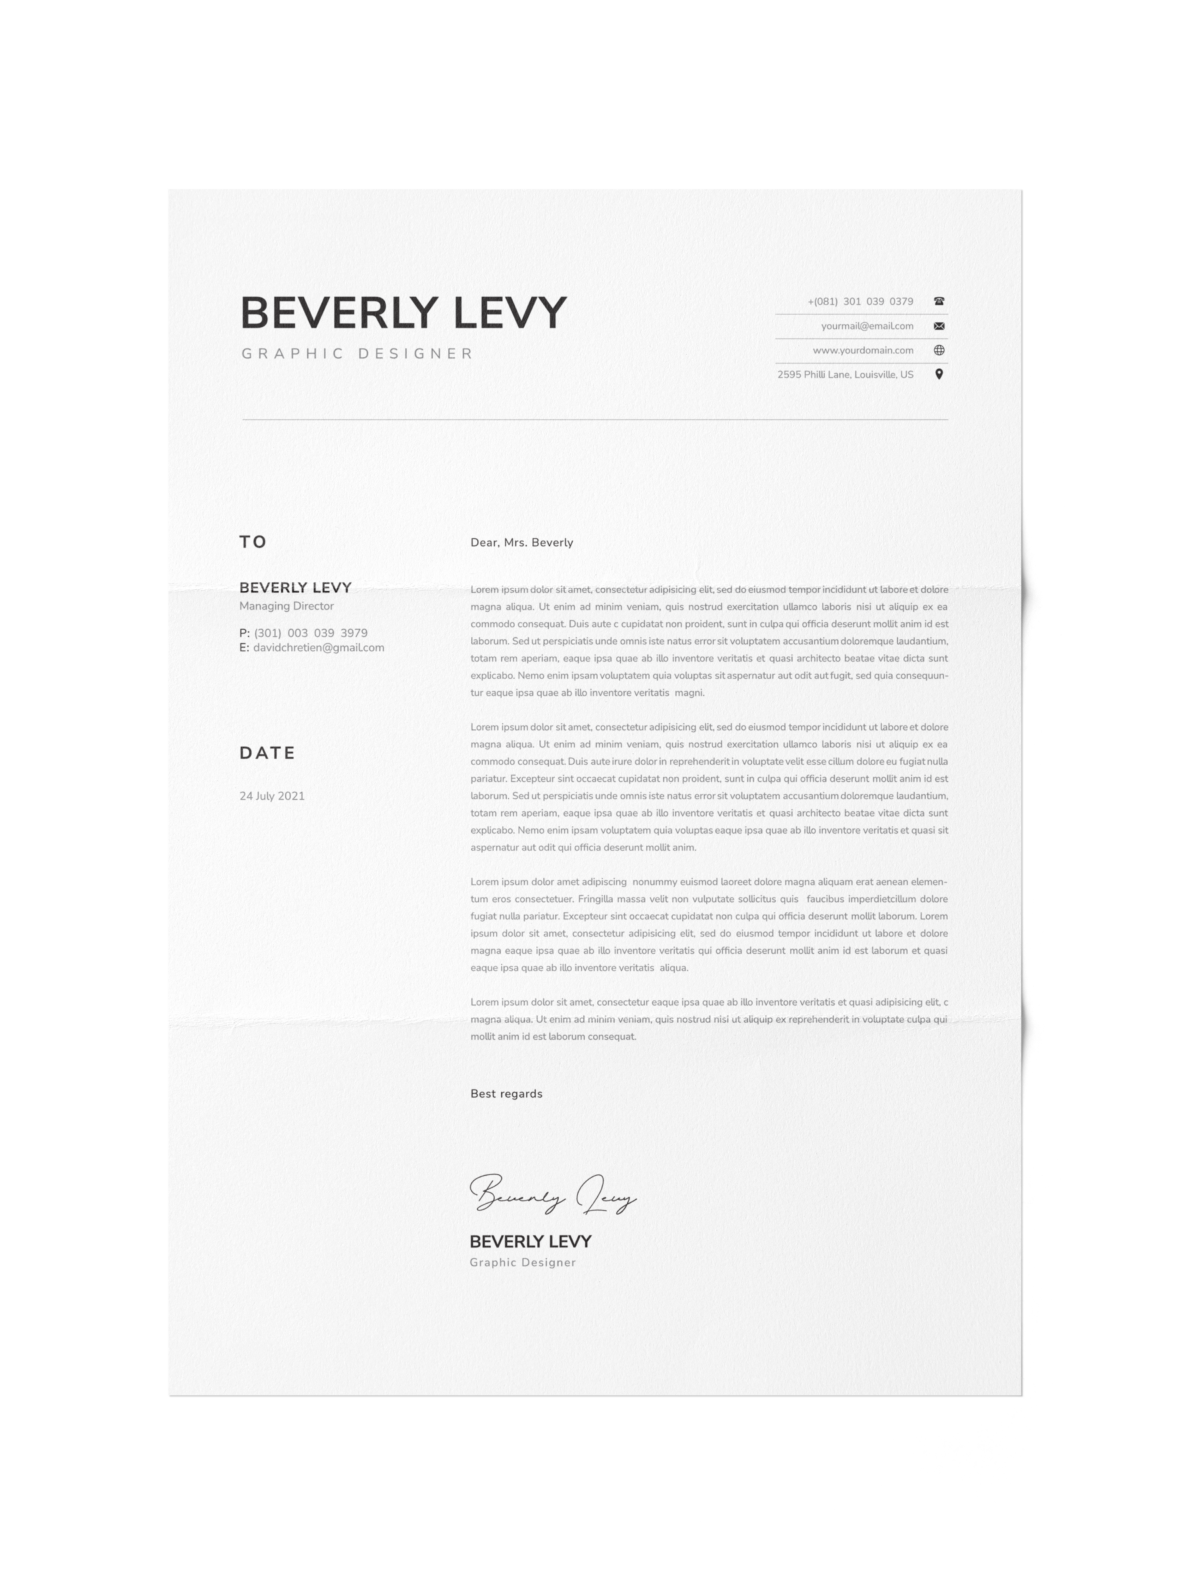 CV #93 Beverly Levy